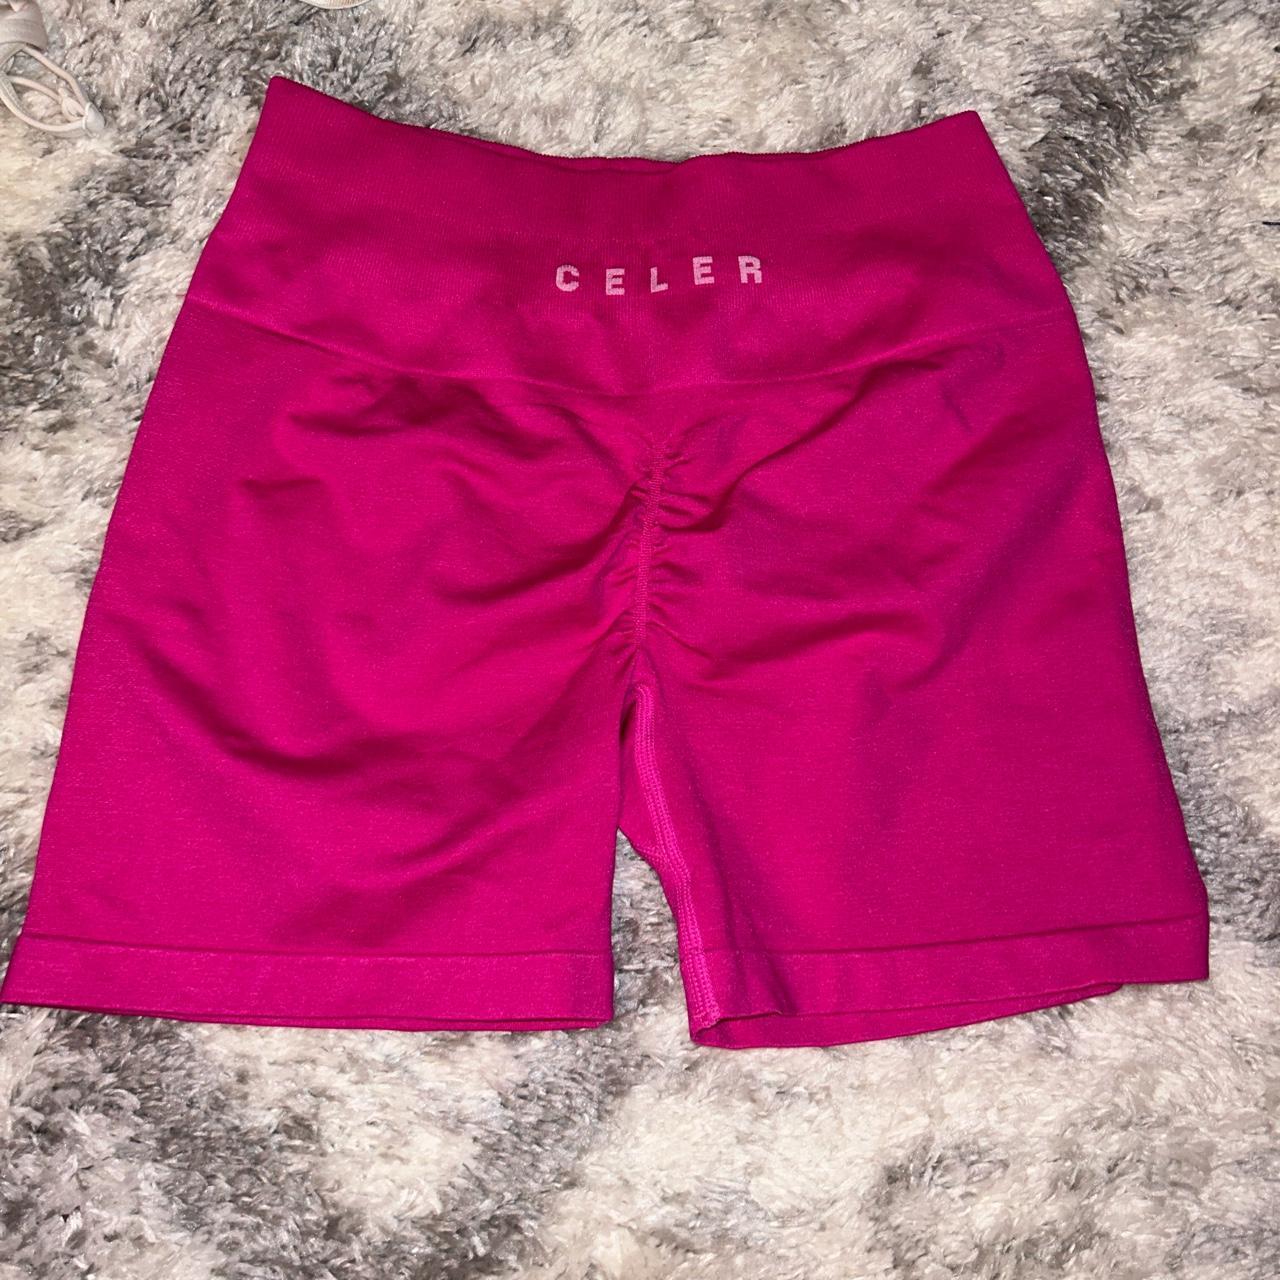 celer workout shorts -super comfy and squat proof - Depop